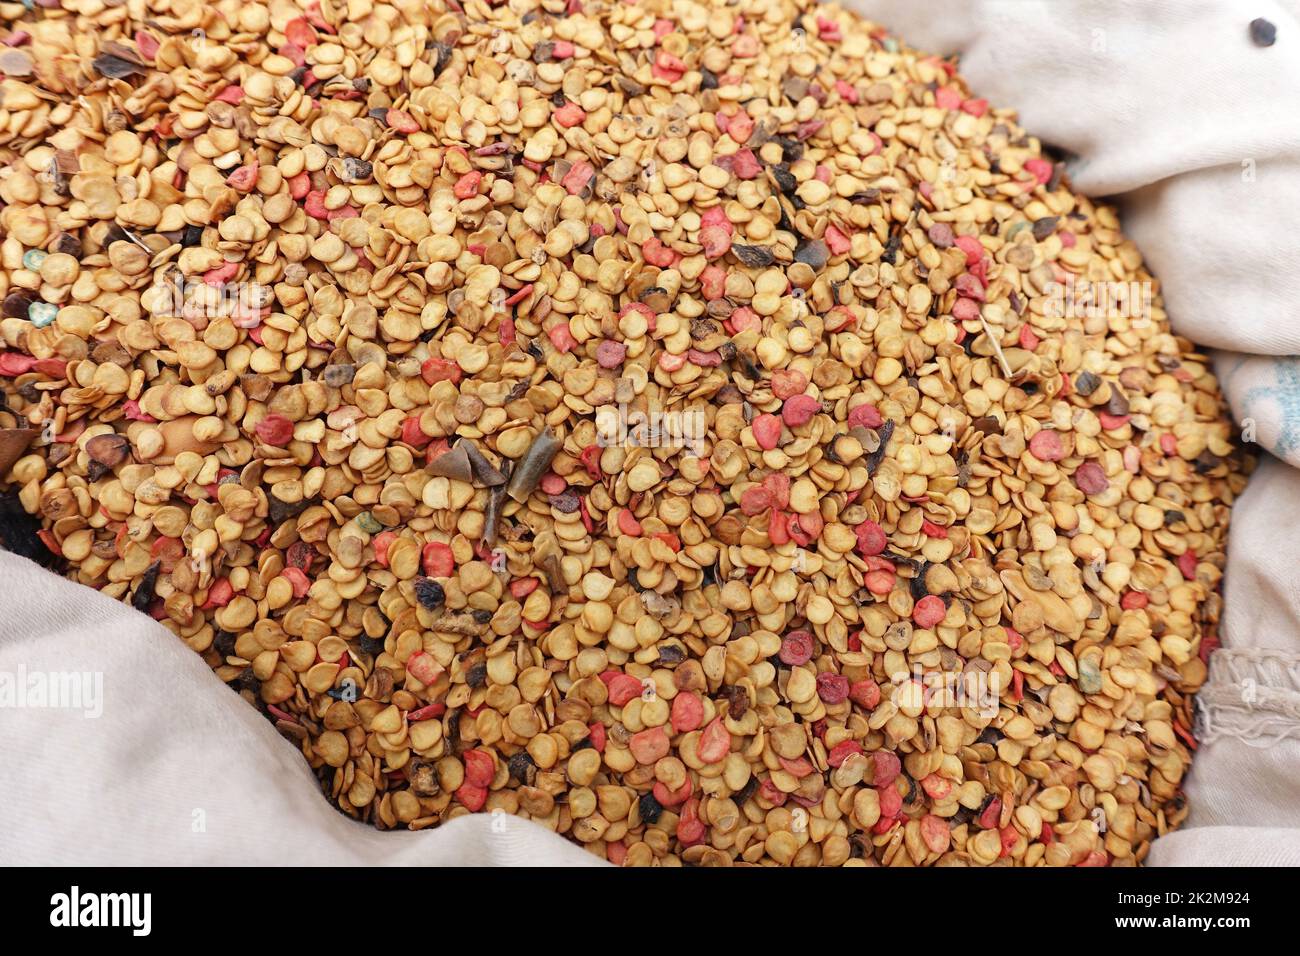 Unverpackte, biologisch abgewandte Samen von Pfeffersamen, die in Stoffbeuteln verkauft werden Stockfoto